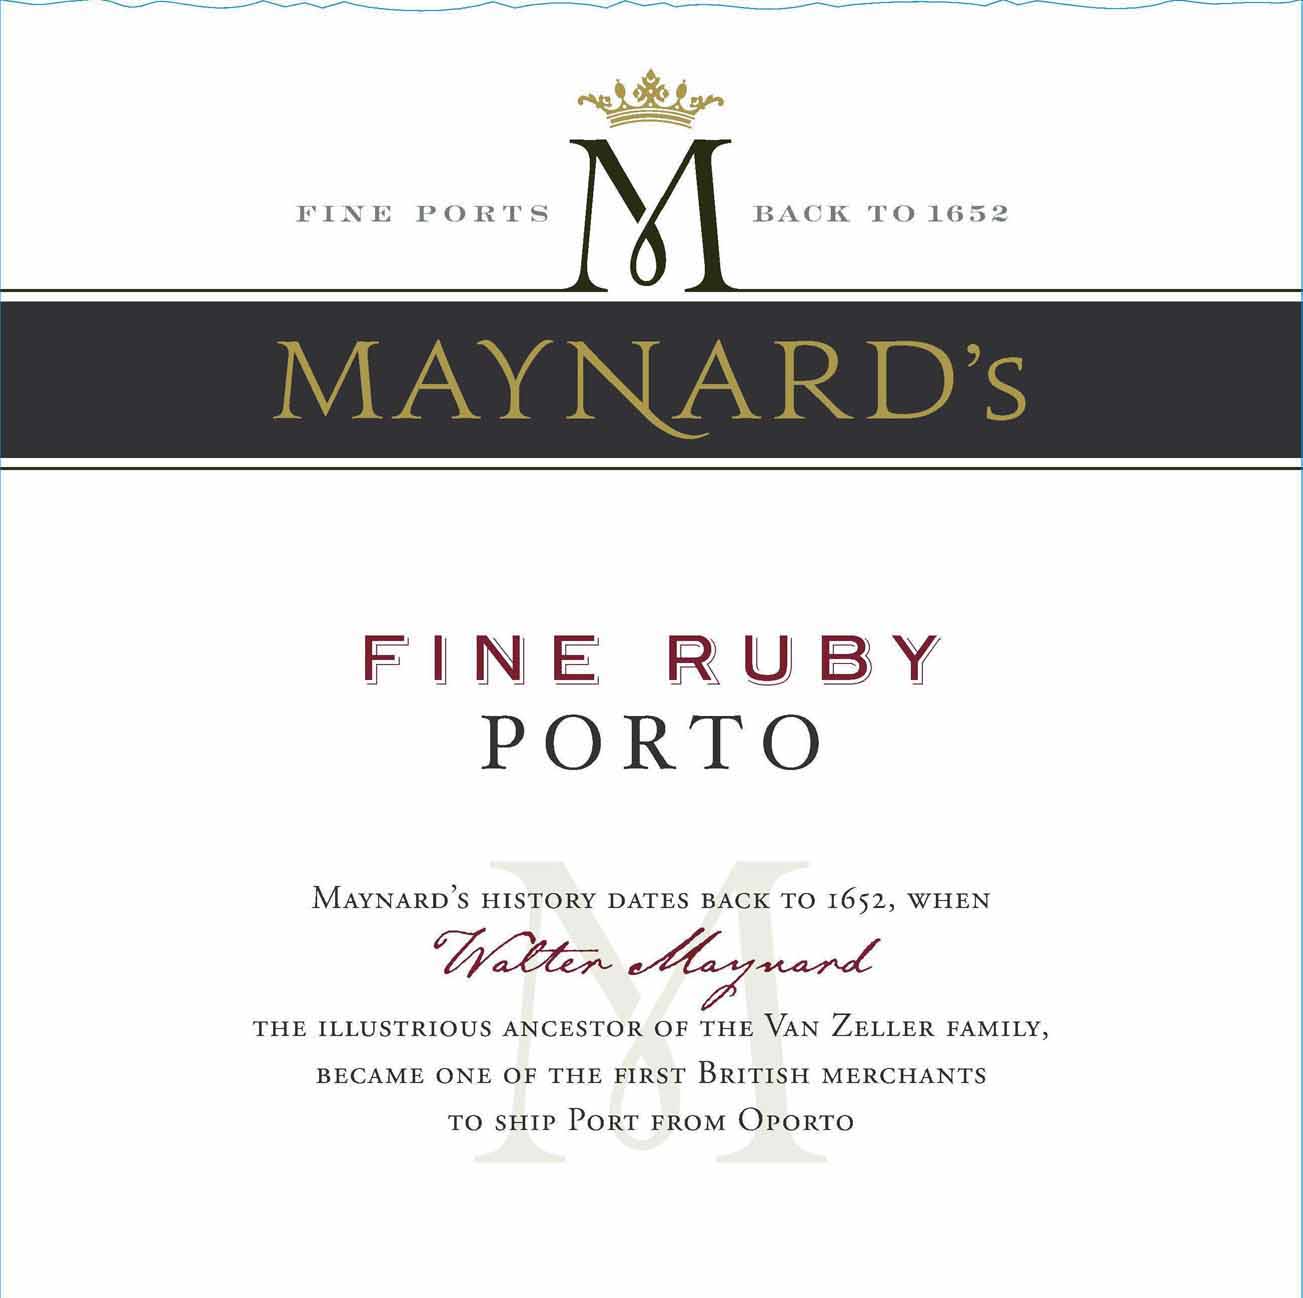 Maynard's - Fine Ruby Porto label